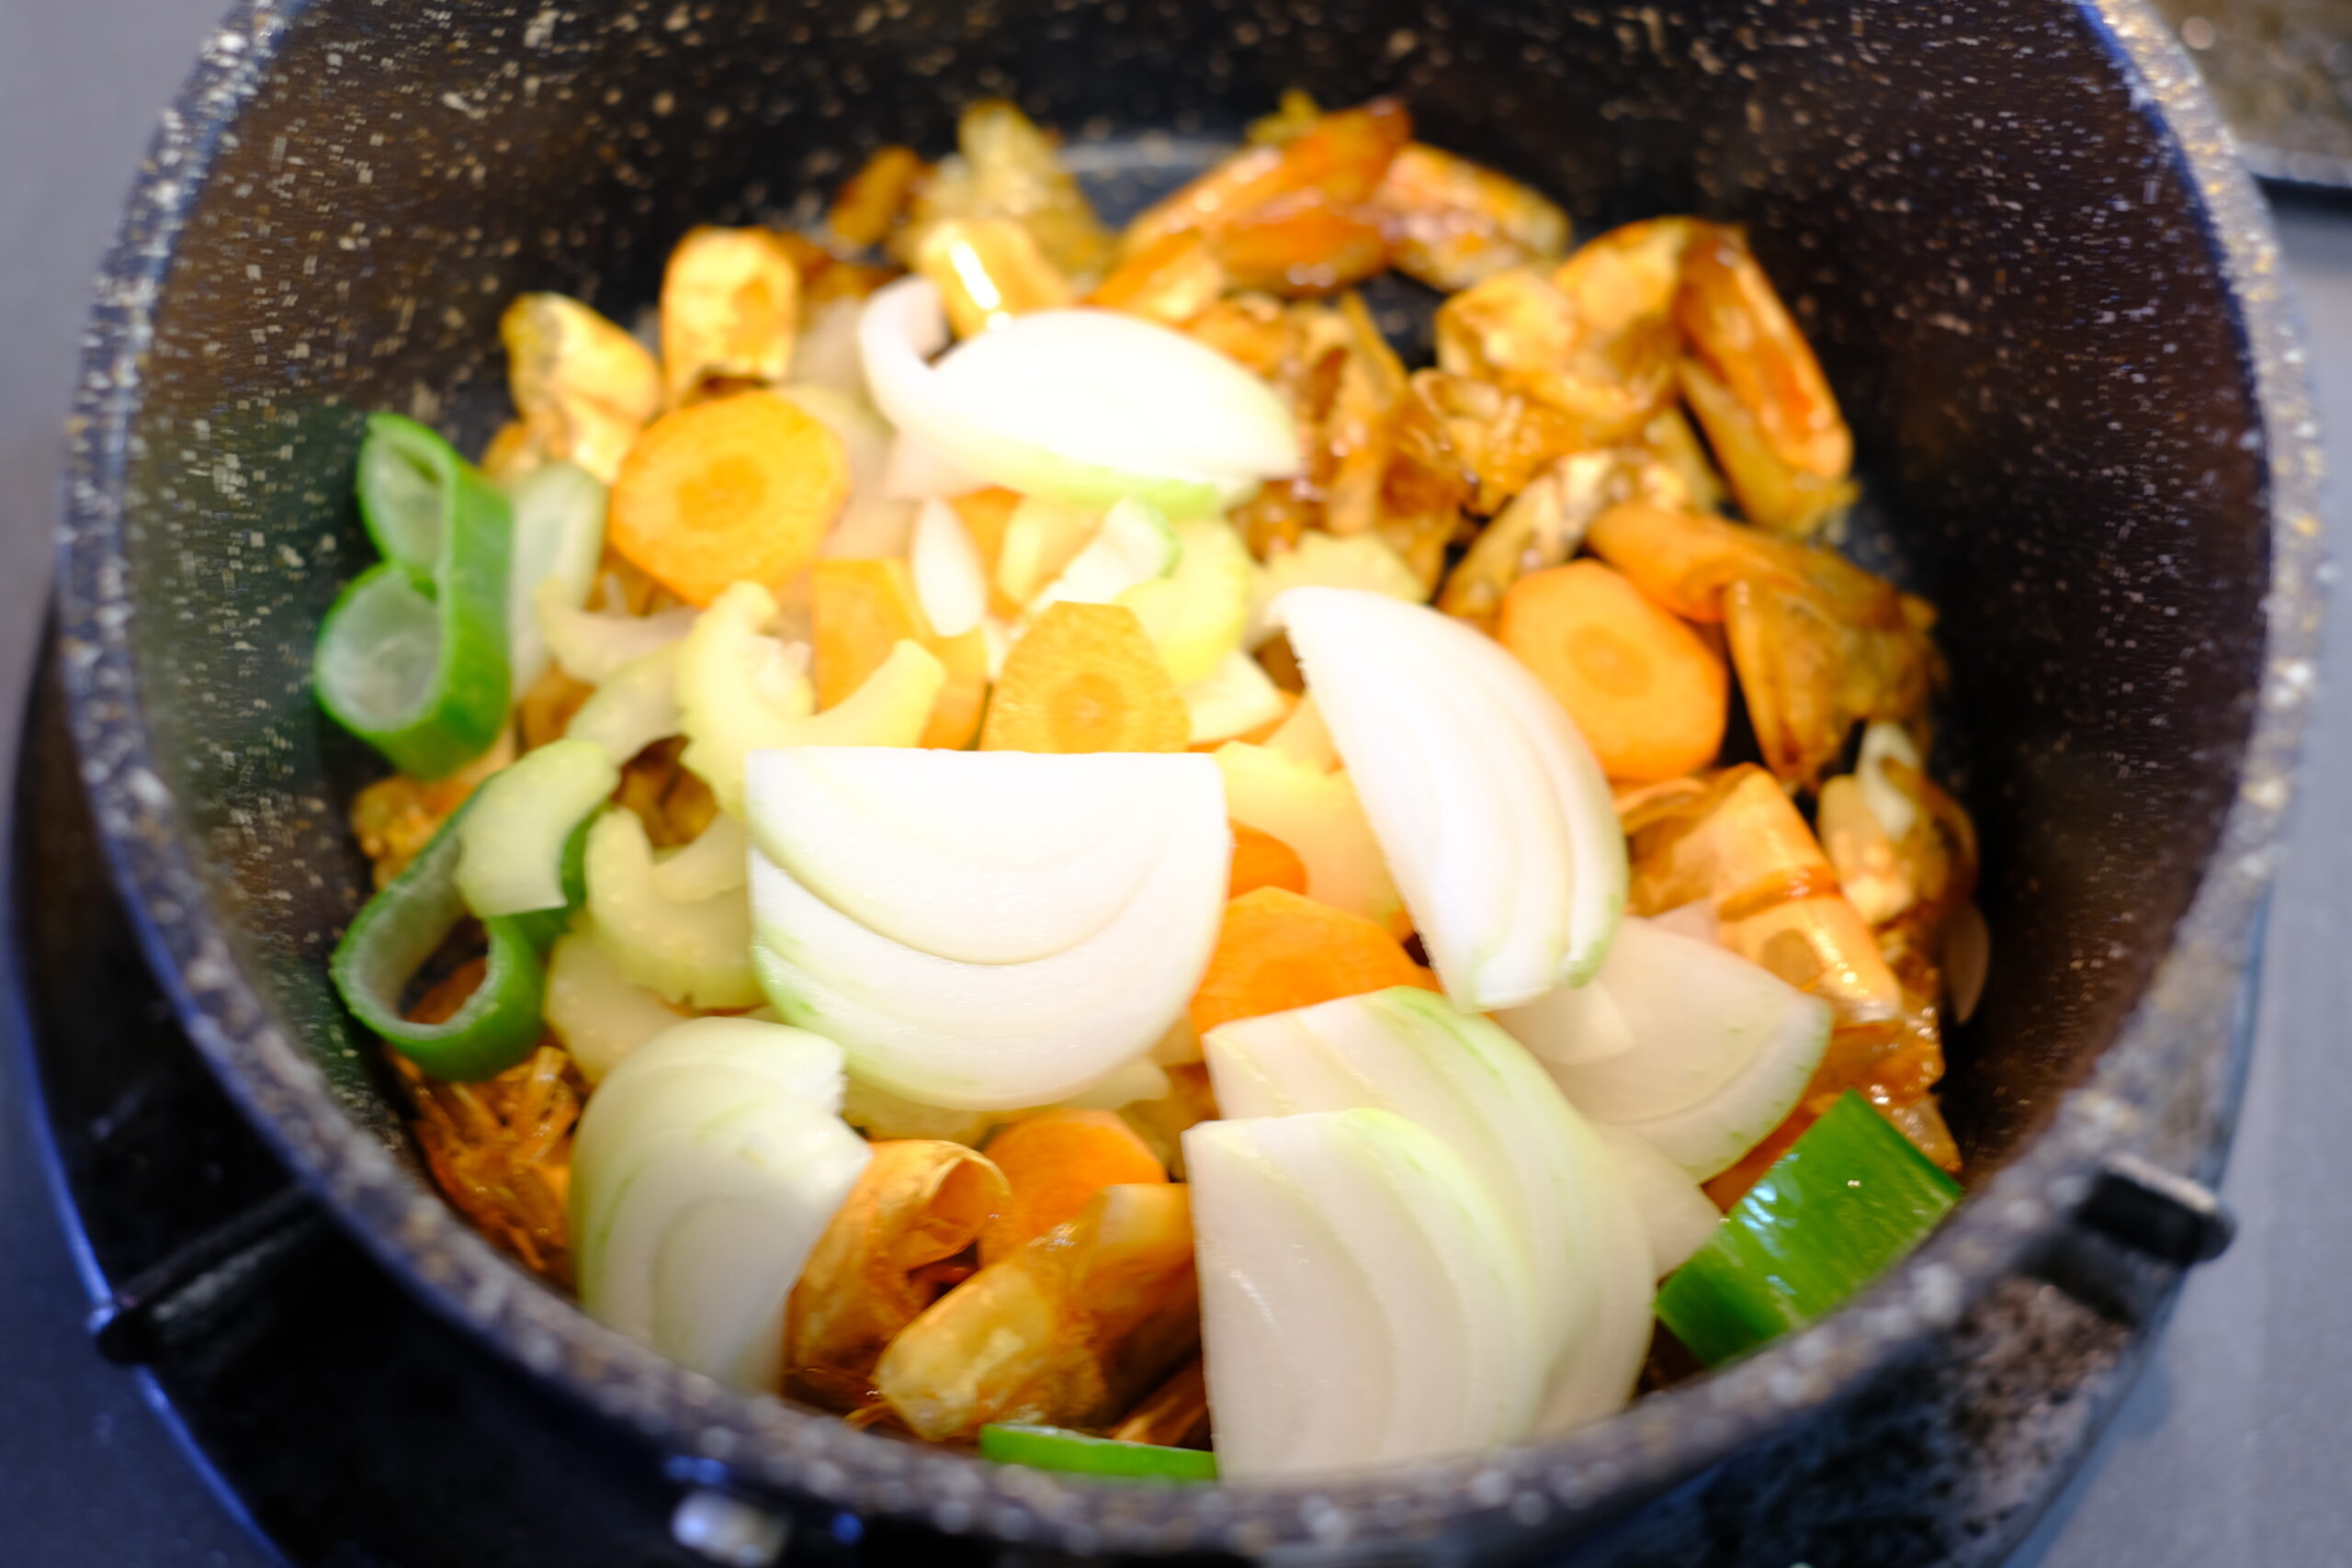 海老のソースを作る鍋に潰したニンニクとスライスした野菜を加えた画像です